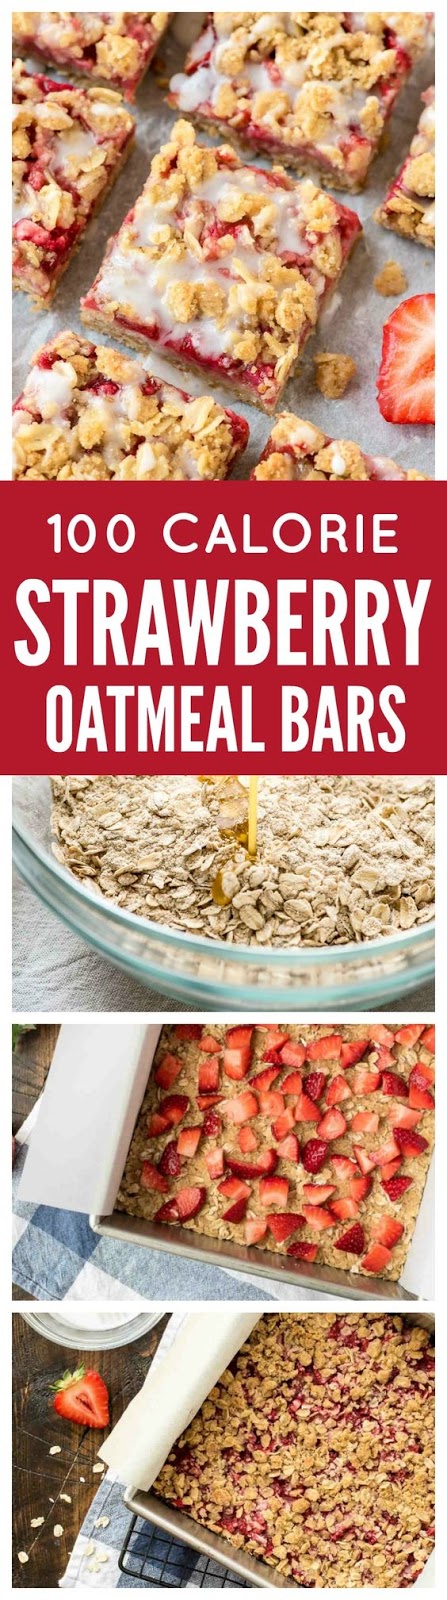 Strawberry Oatmeal Bars